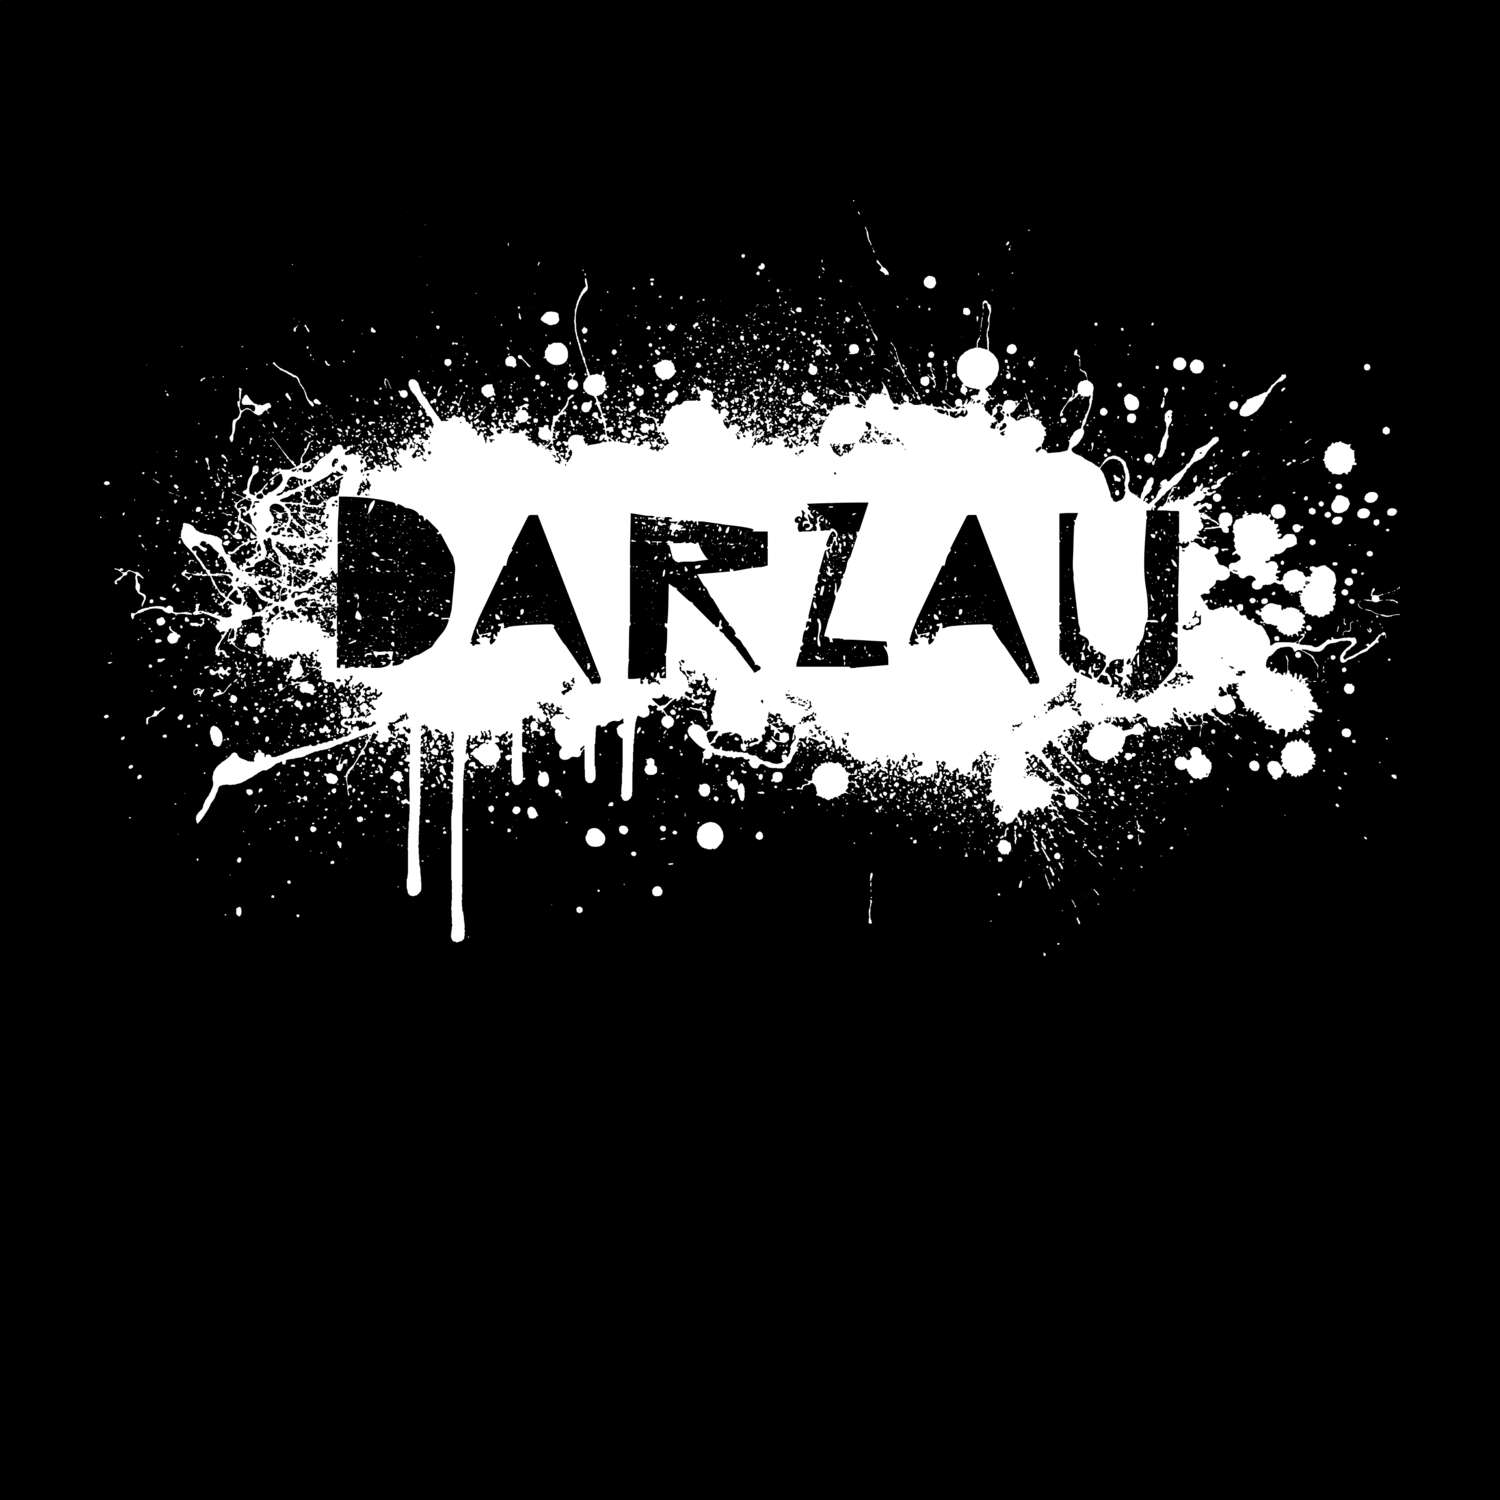 Darzau T-Shirt »Paint Splash Punk«